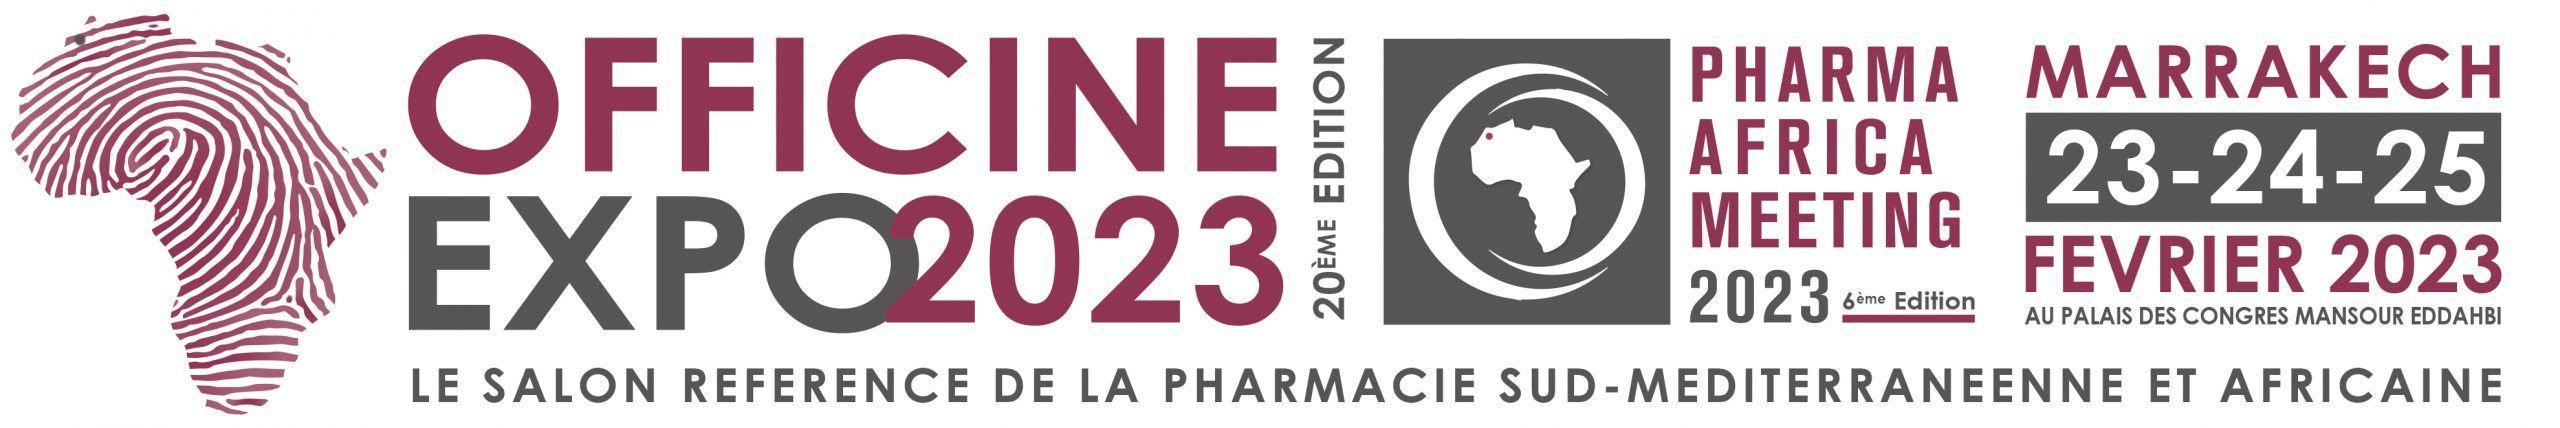 OFFICINE EXPO 2022 Logo